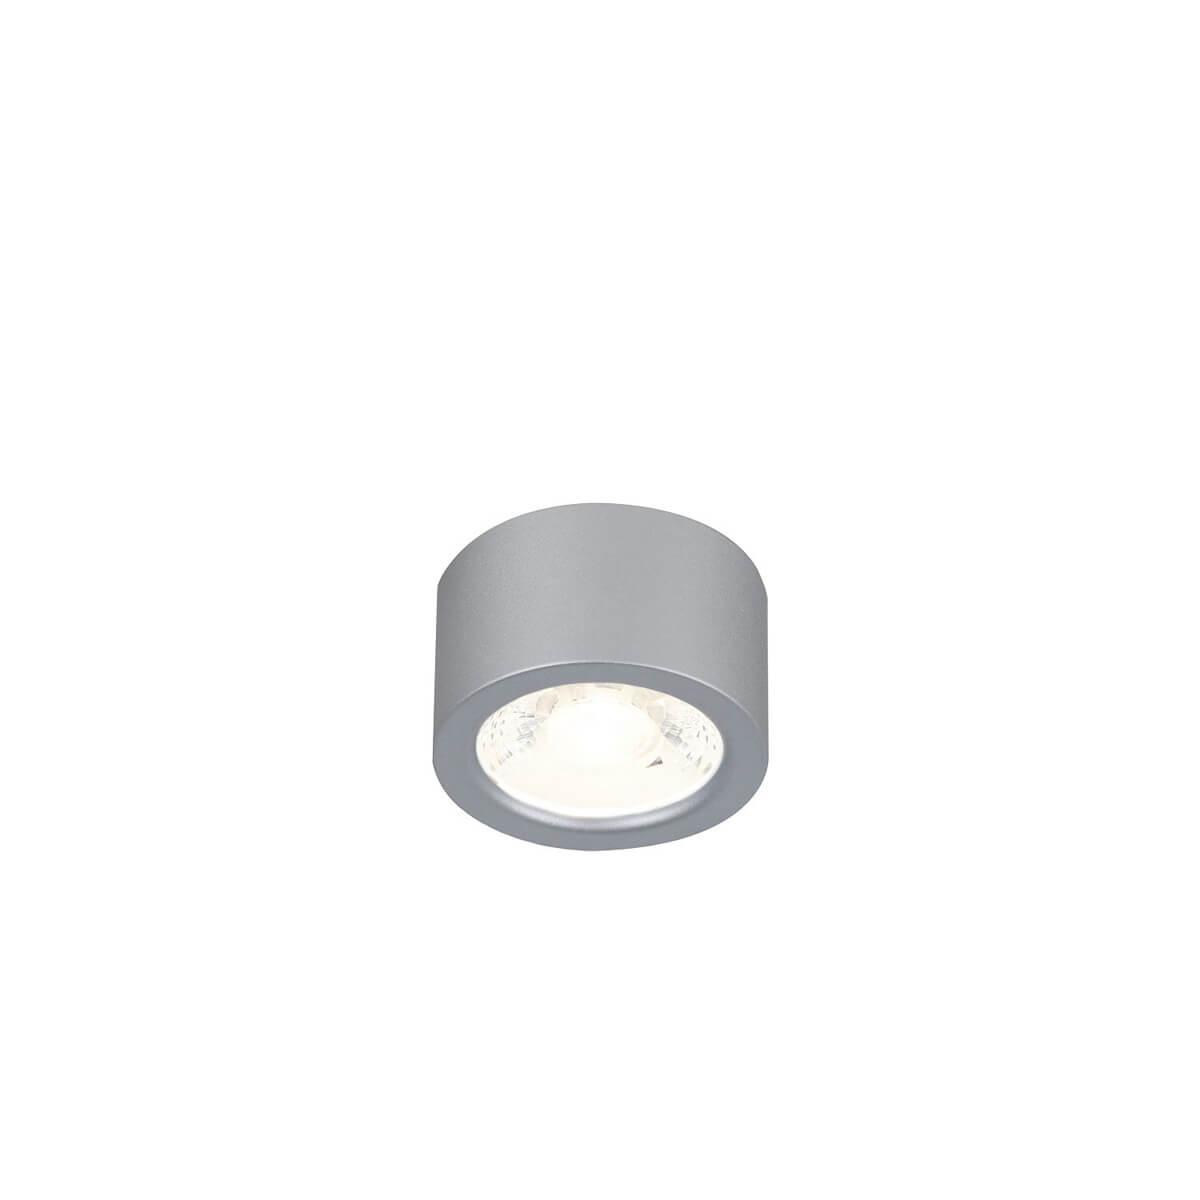 Потолочный светодиодный светильник Favourite Deorsum 2808-1U потолочный светодиодный светильник favourite deorsum 2809 1u